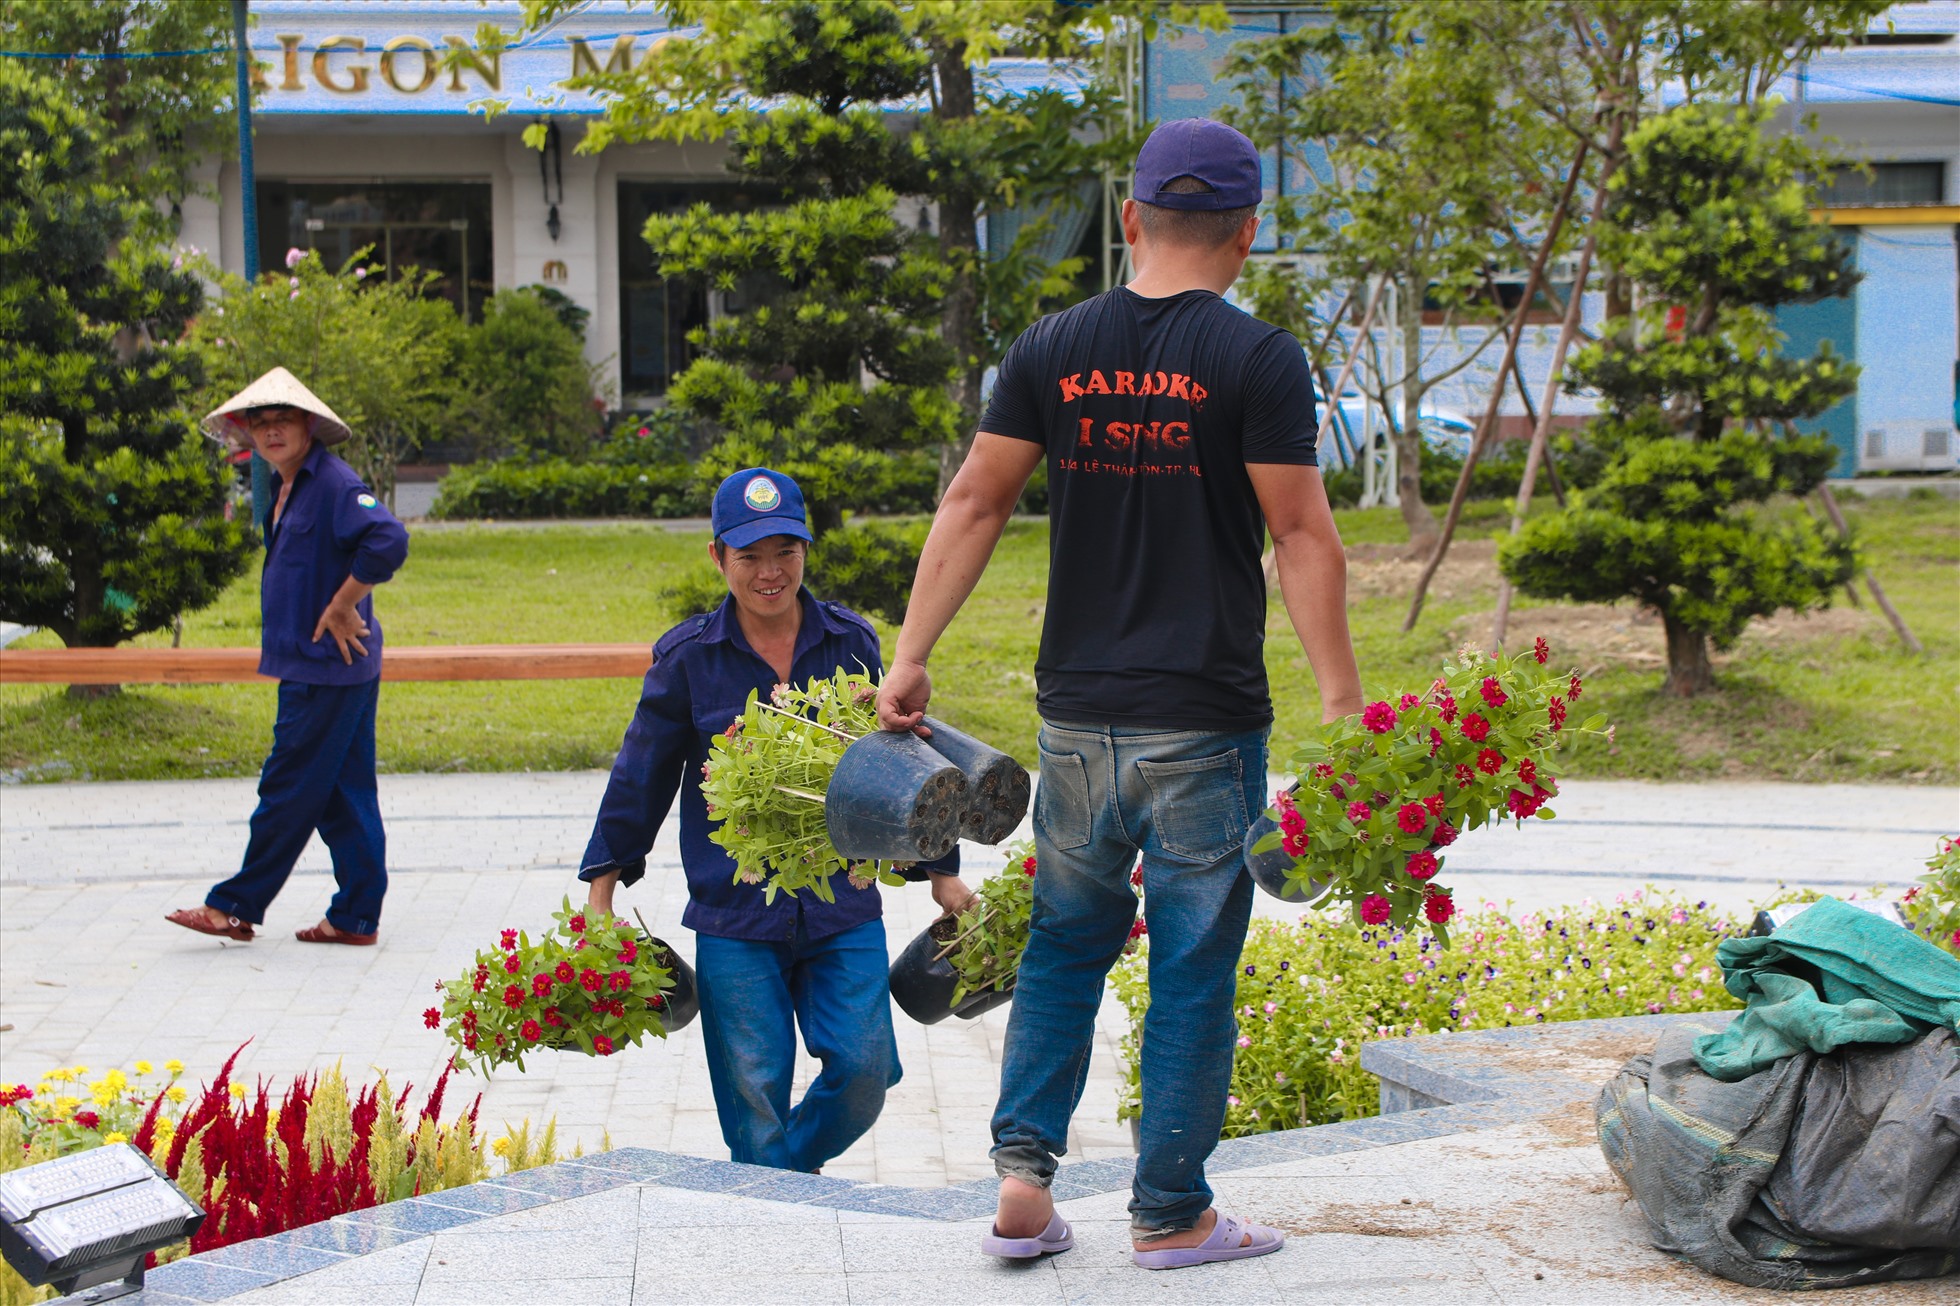 Sau khi lãnh đạo tỉnh Thừa Thiên Huế trực tiếp kiểm tra, đôn đốc đẩy nhanh tiến trình thi công các hạng mục phục vụ cho Festival NTT, hiện hàng chục công nhân đang gấp rút những công đoạn cuối cùng để kịp tiến độ cho tuần lễ lớn, dưới cái nắng oi ả của Huế.